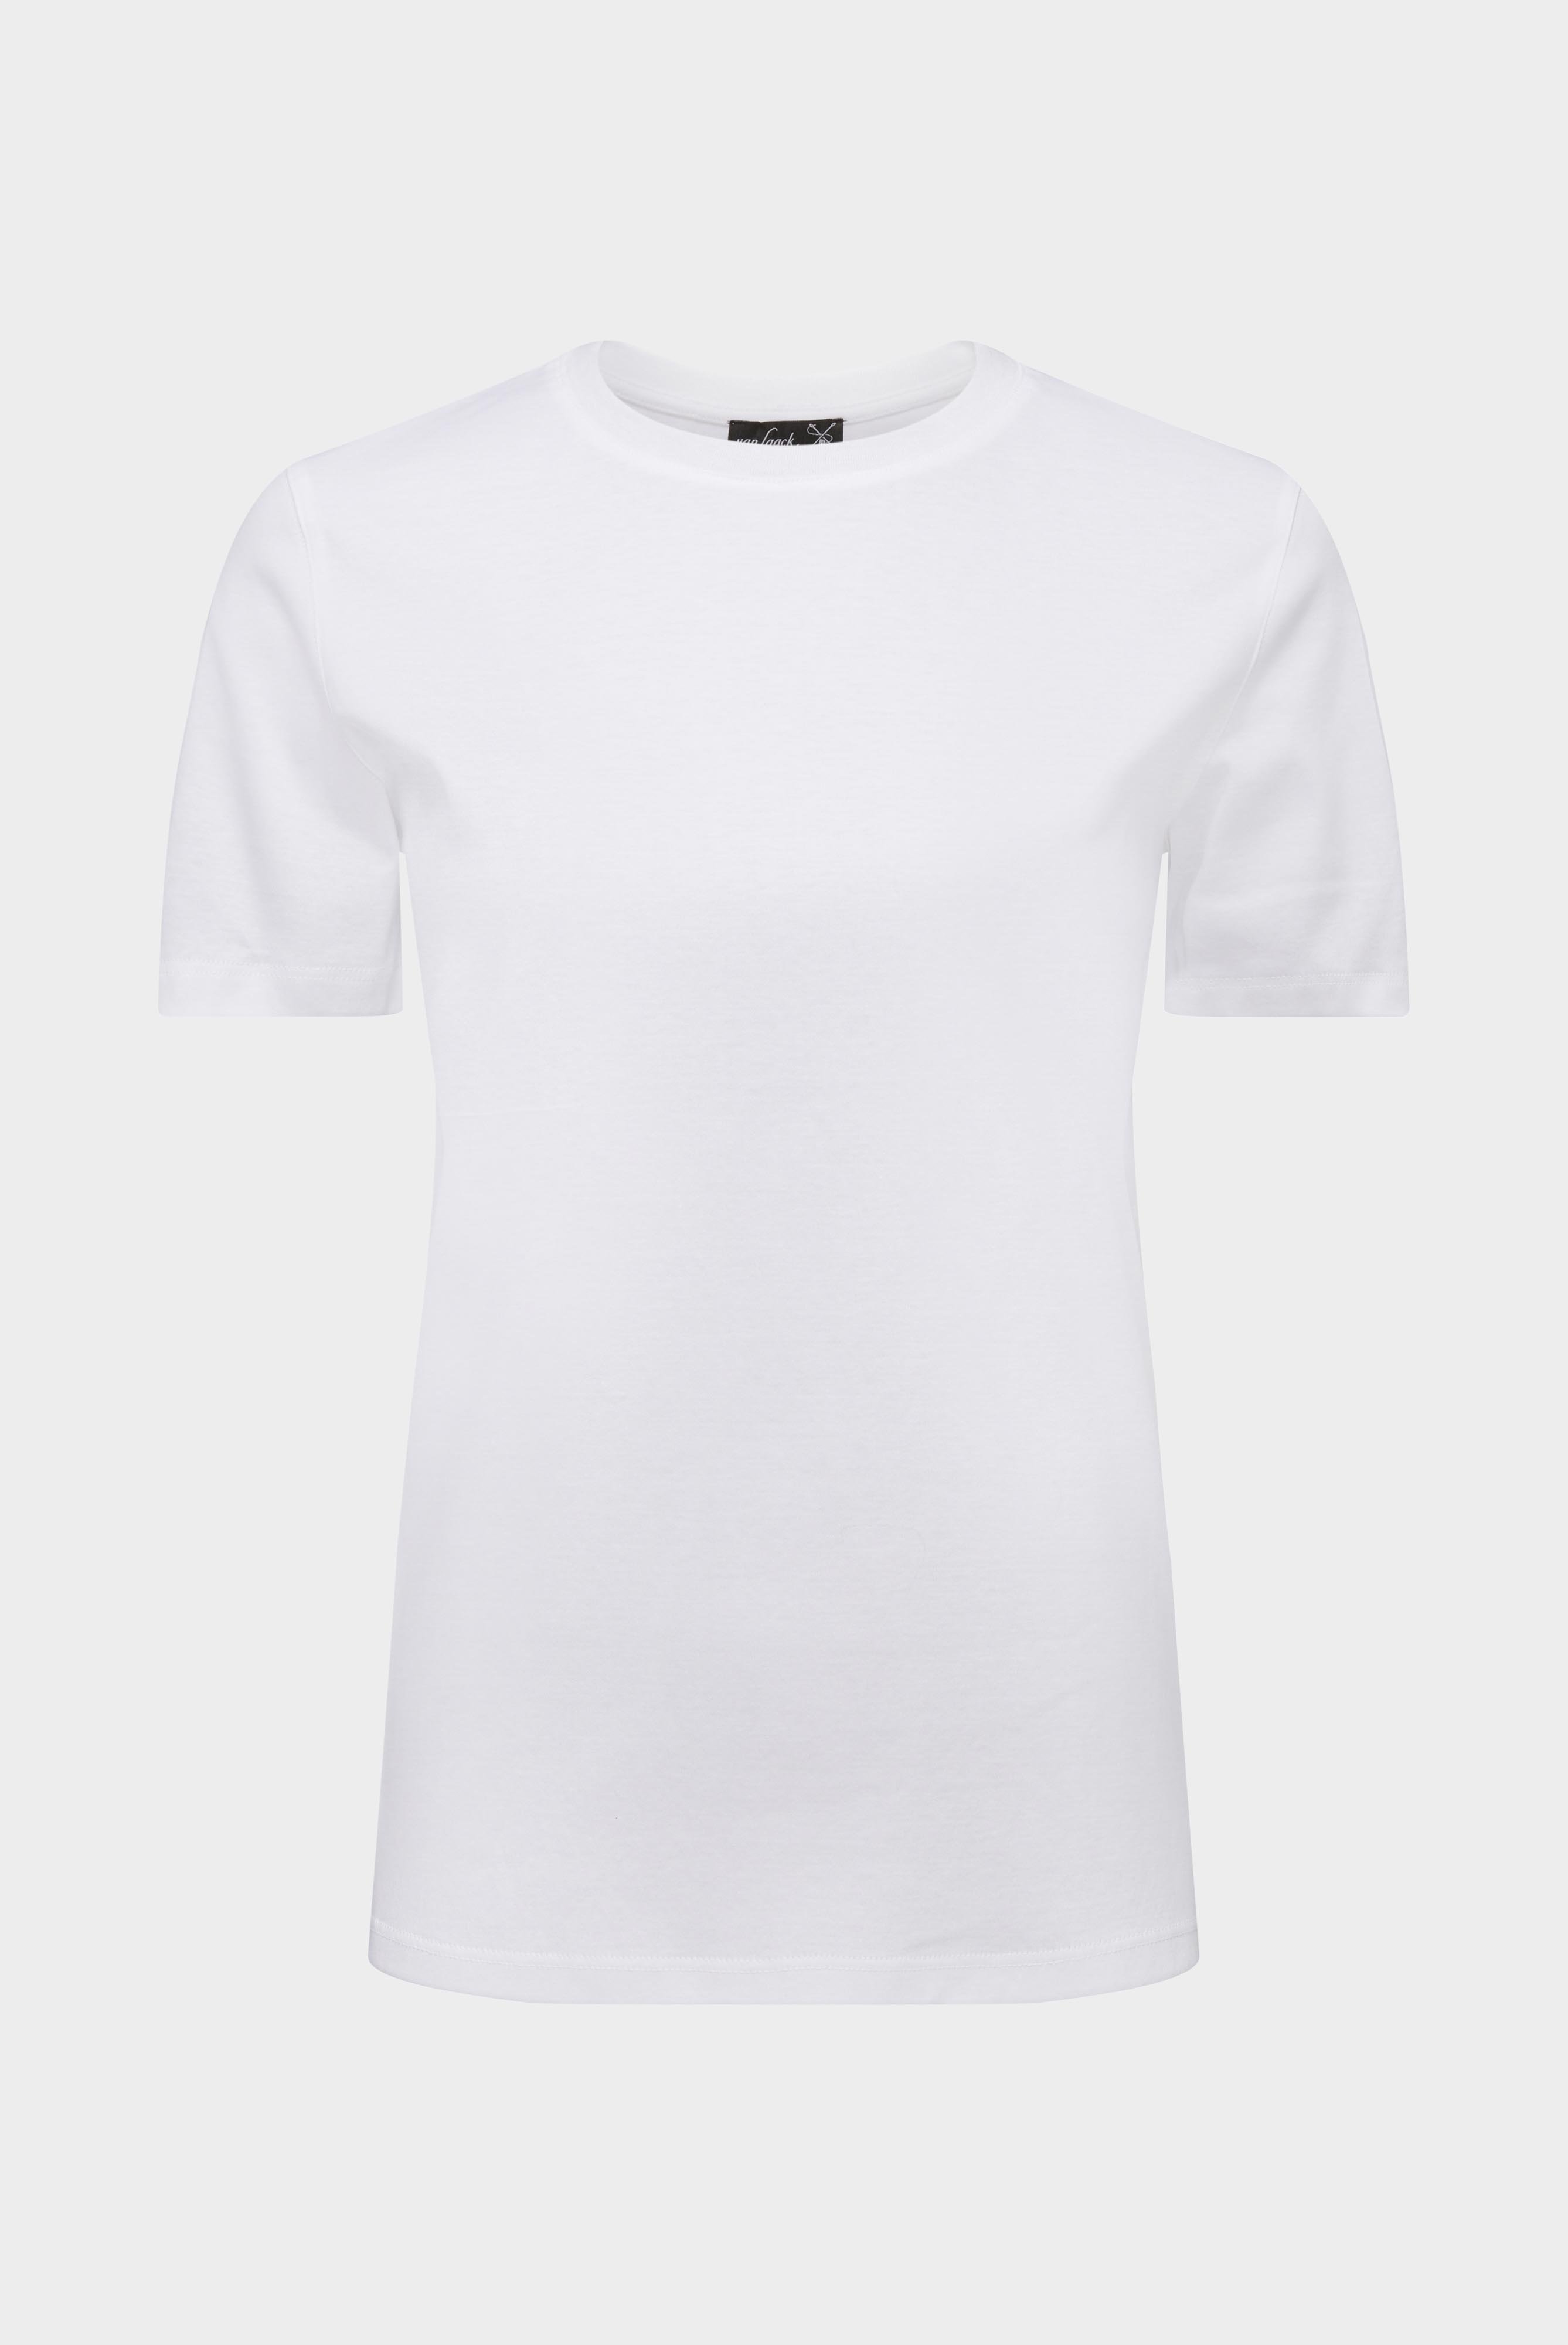 Tops & T-Shirts+Jersey T-Shirt+05.6384.18.180031.000.36